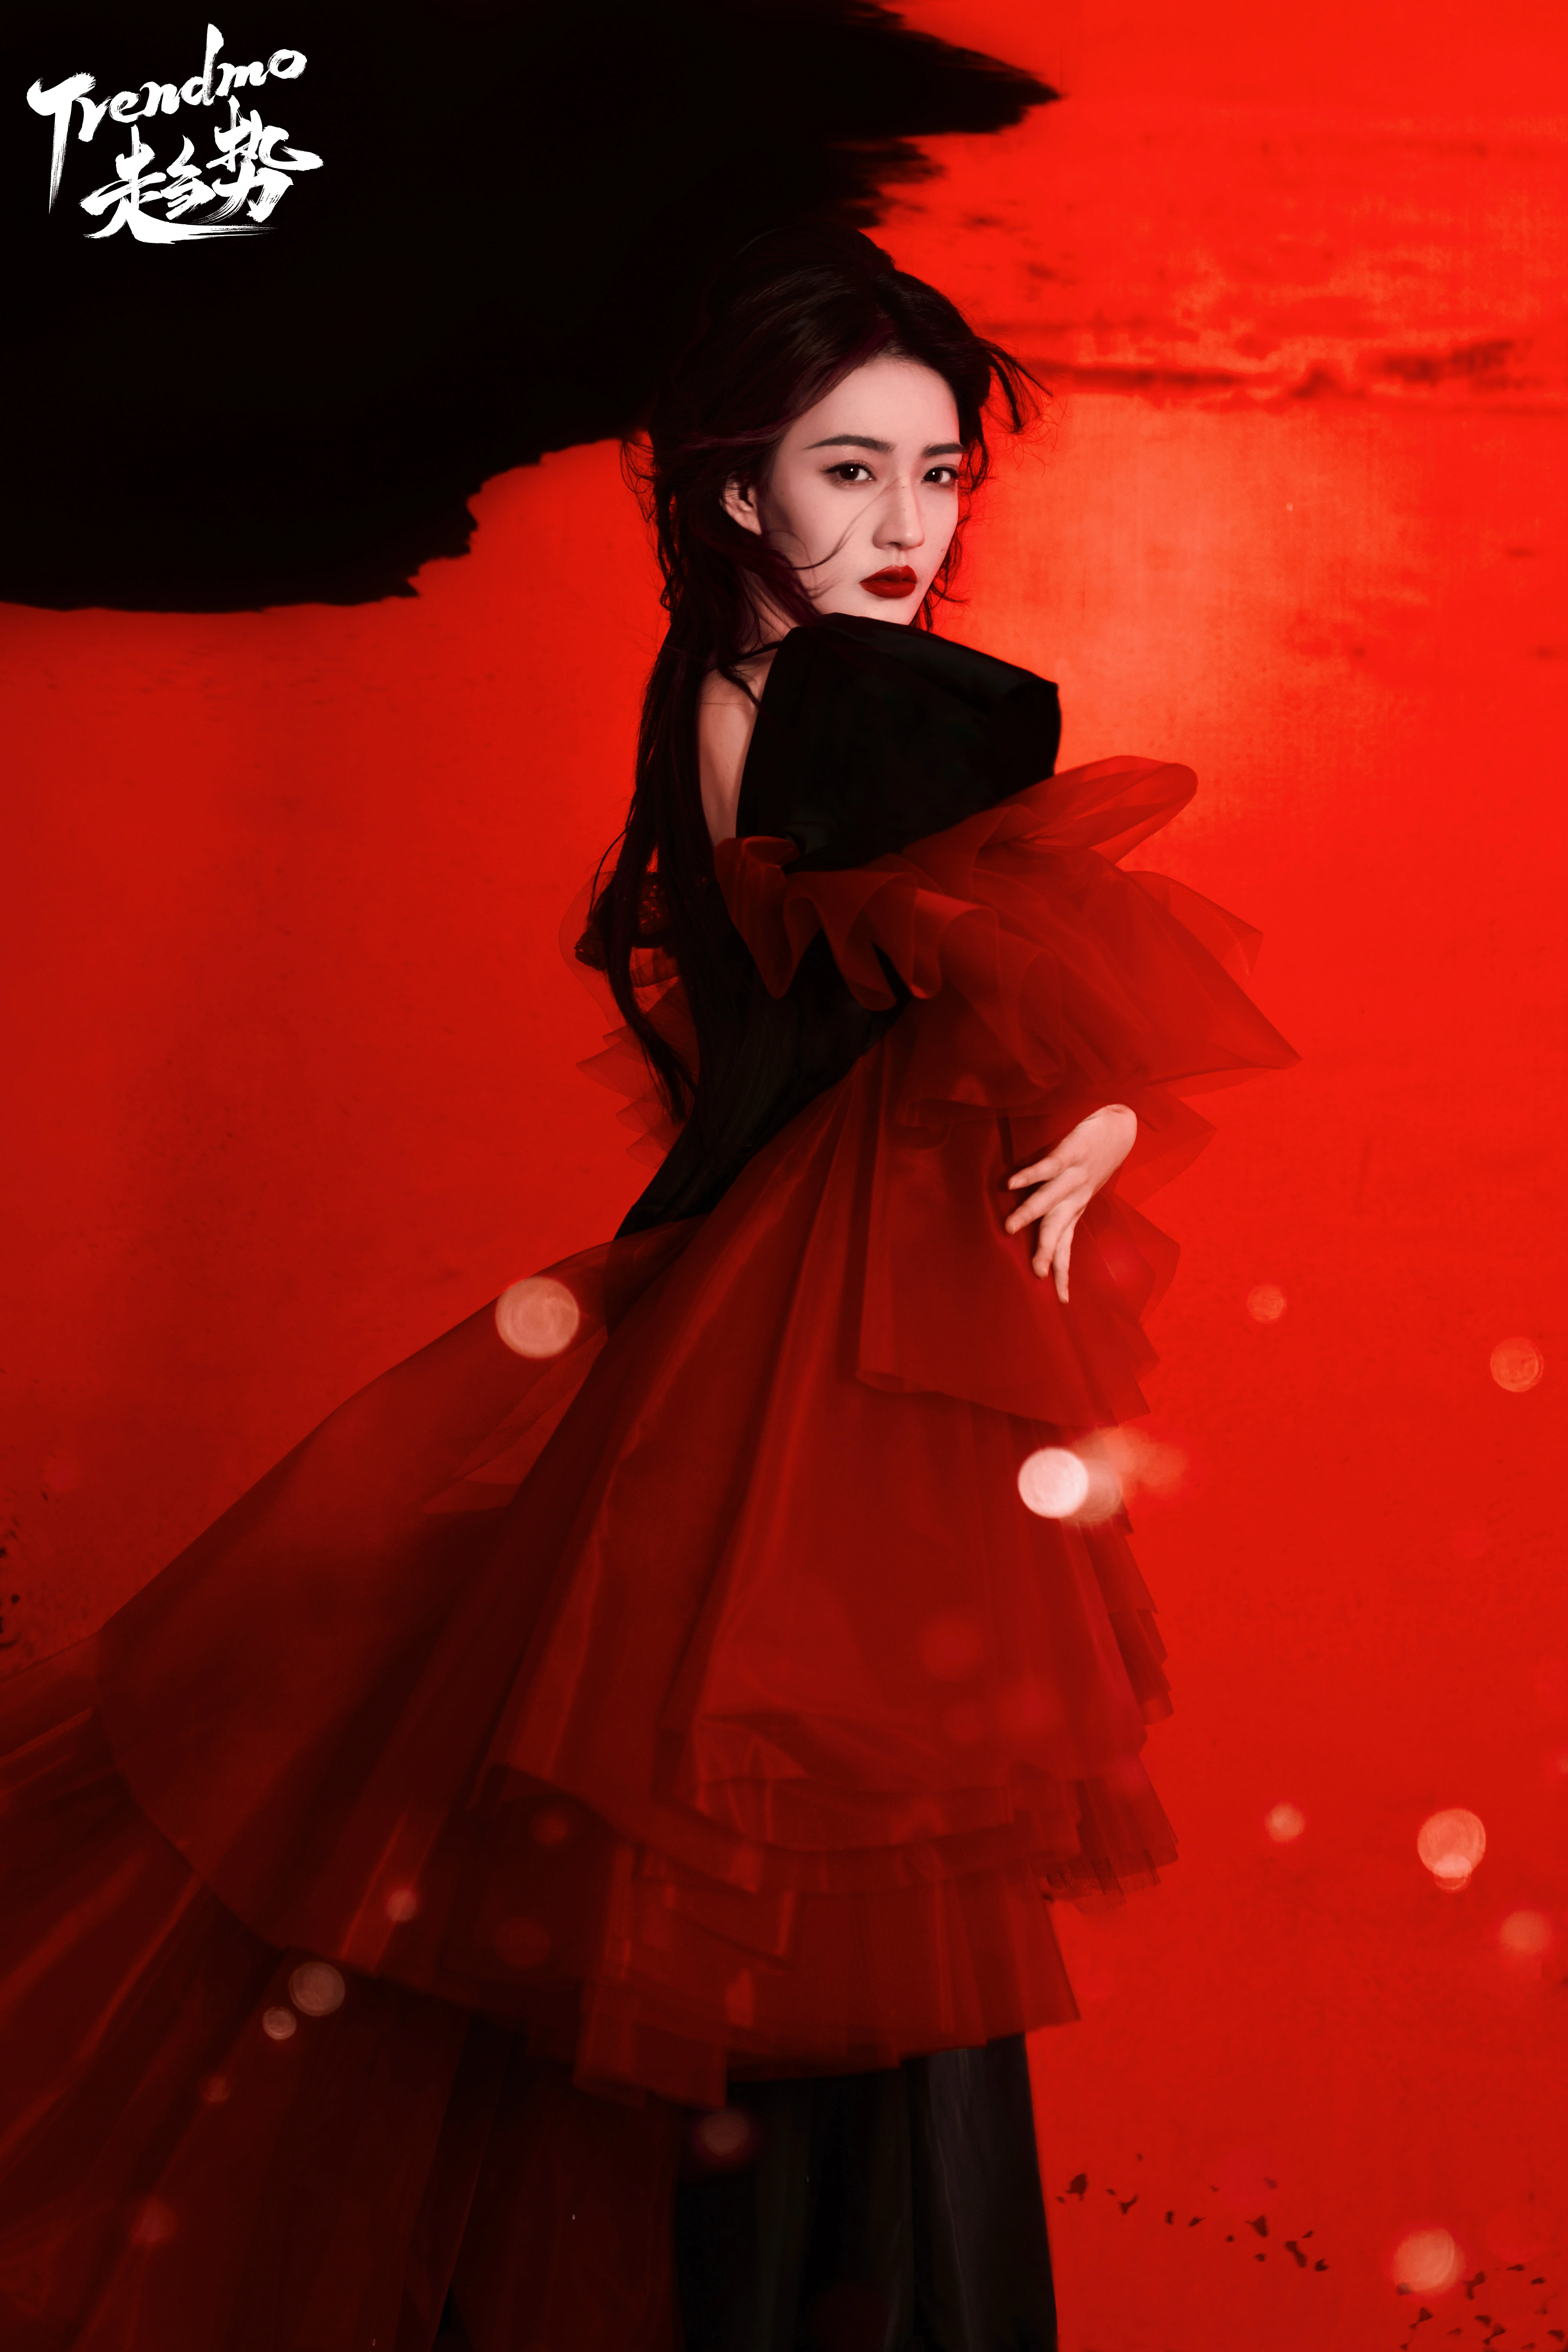 Trendmo趋势徐璐封面大片 红色长裙与黑色西装制服优雅迷人,7